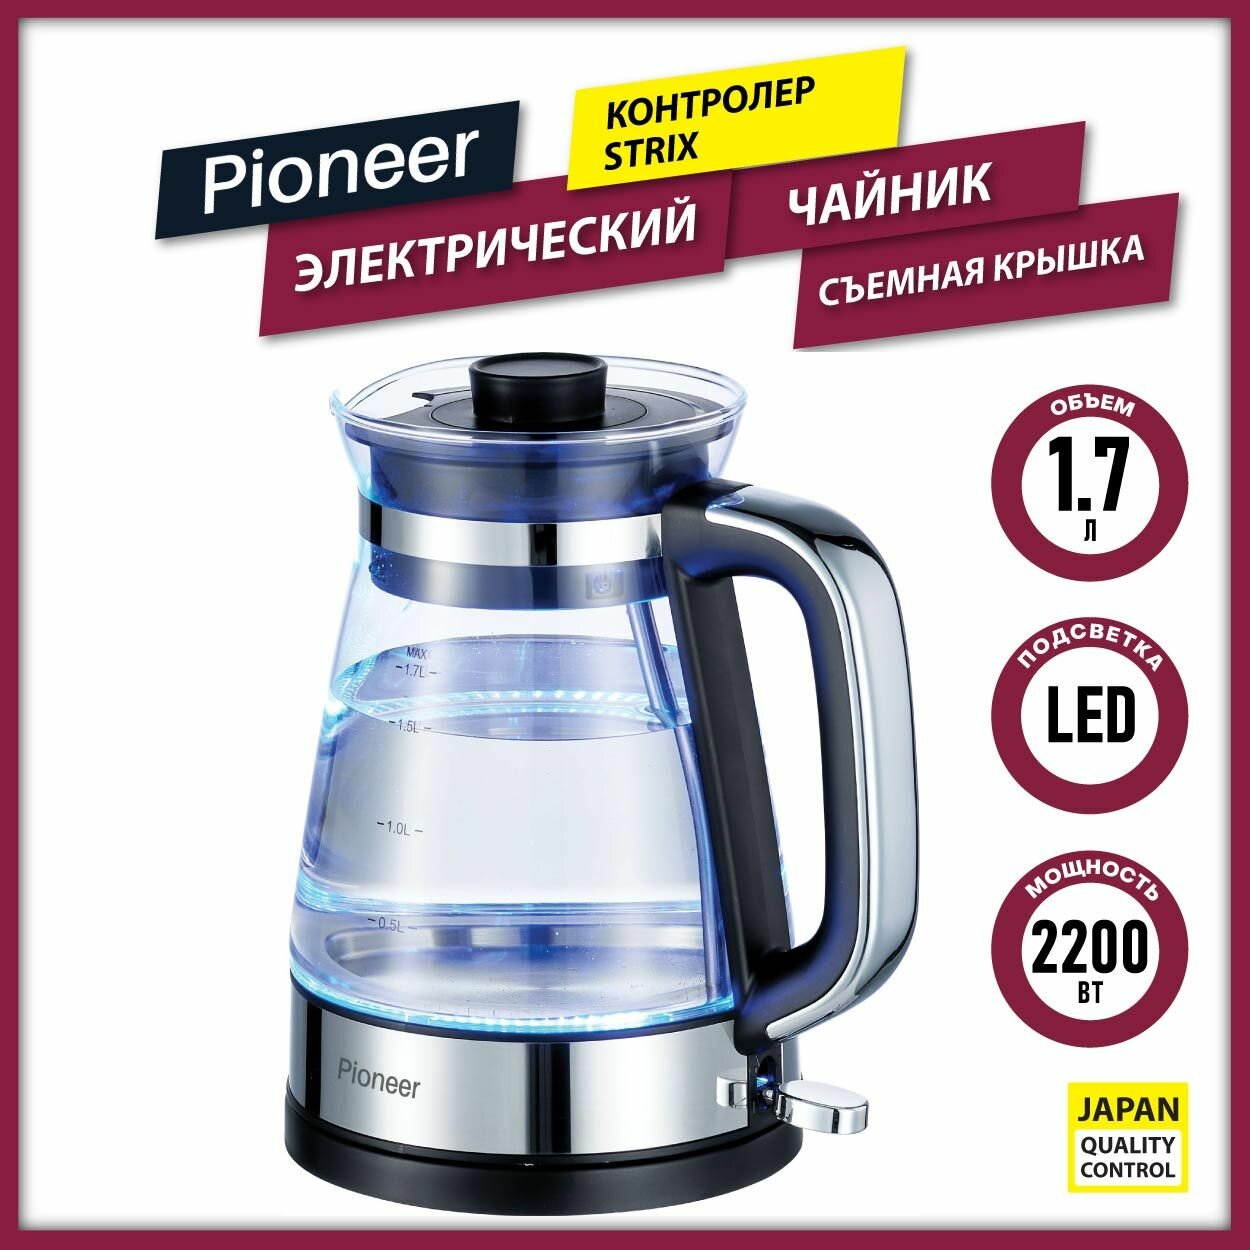 Чайник электрический Pioneer KE805G 1,7 л, из боросиликатного стекла, LED подсветка, контроллер STRIX, съемная крышка, 2200 Вт